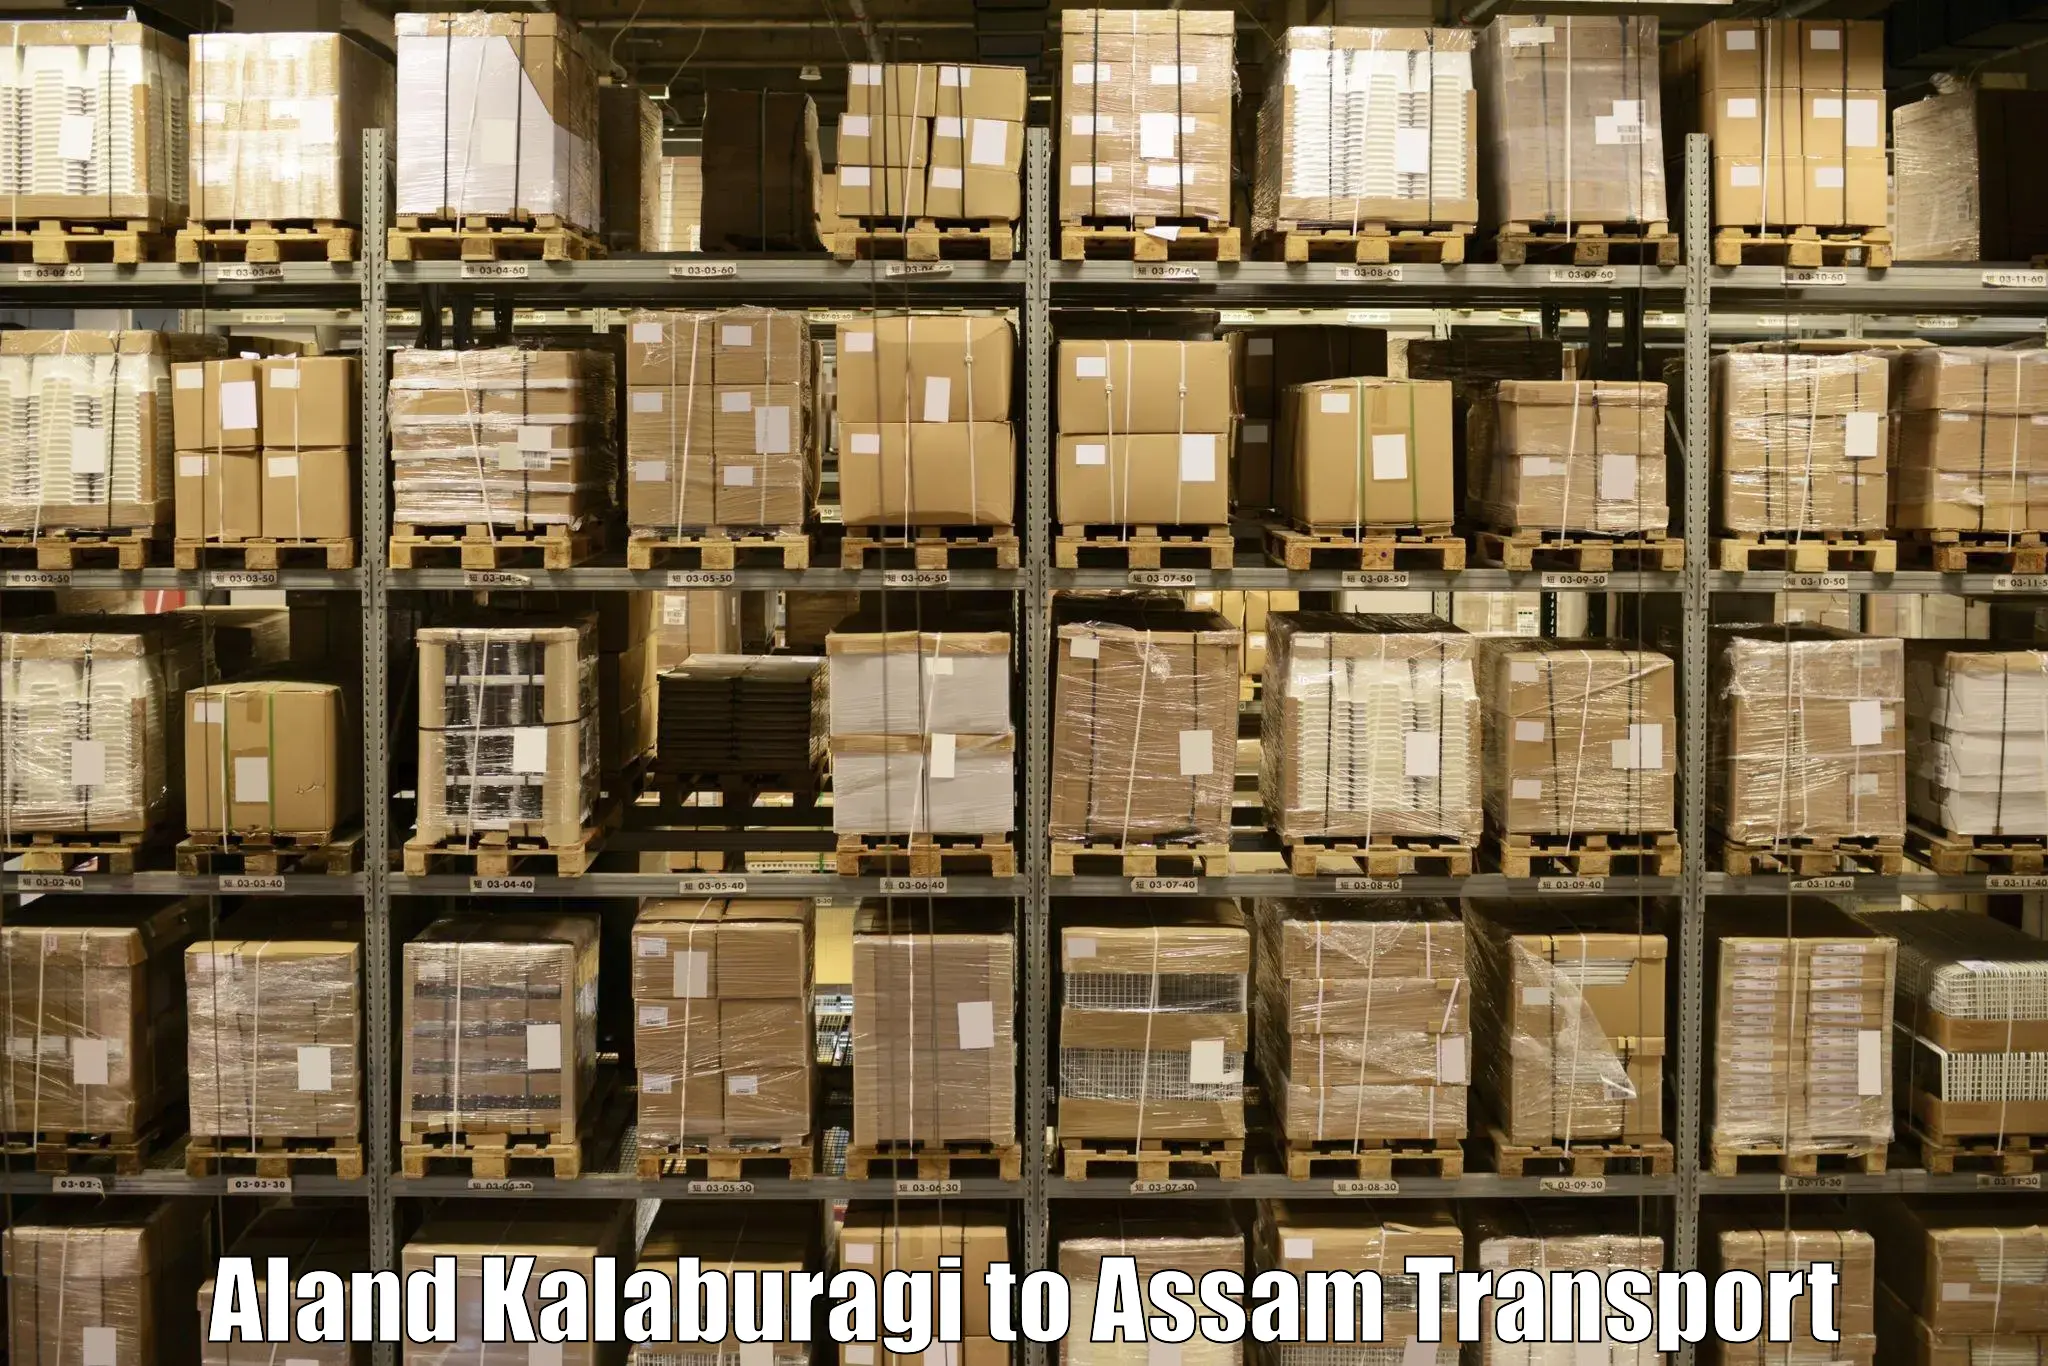 Air freight transport services Aland Kalaburagi to Goalpara